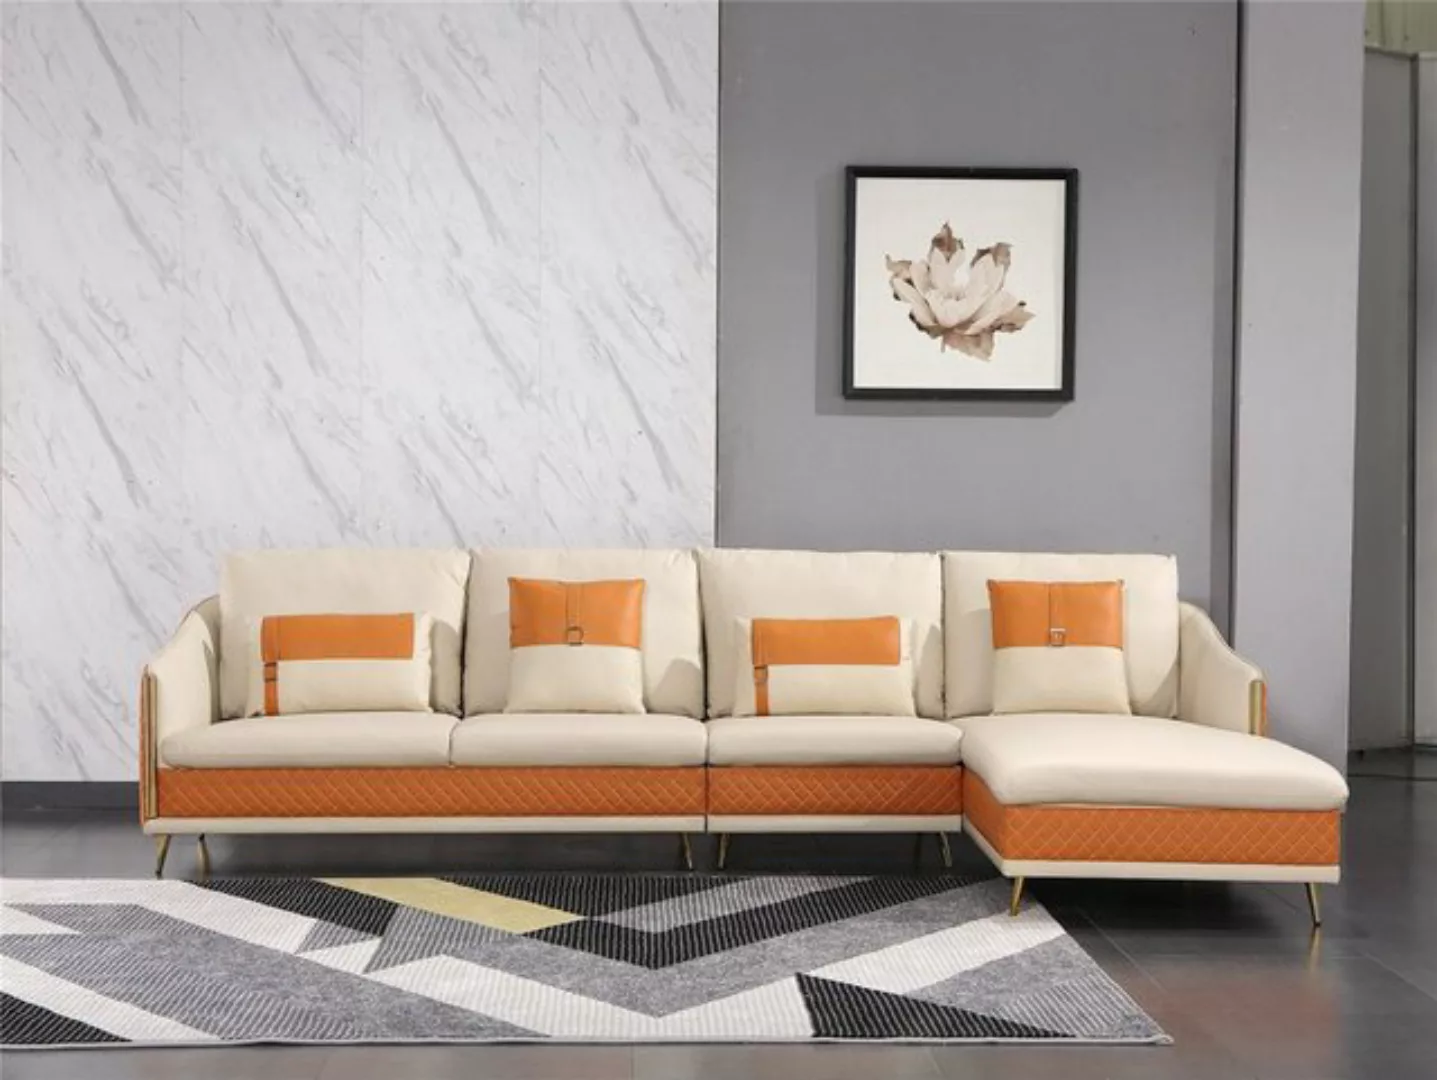 JVmoebel Ecksofa Couch Ecksofa Leder Wohnlandschaft Garnitur Design Modern, günstig online kaufen